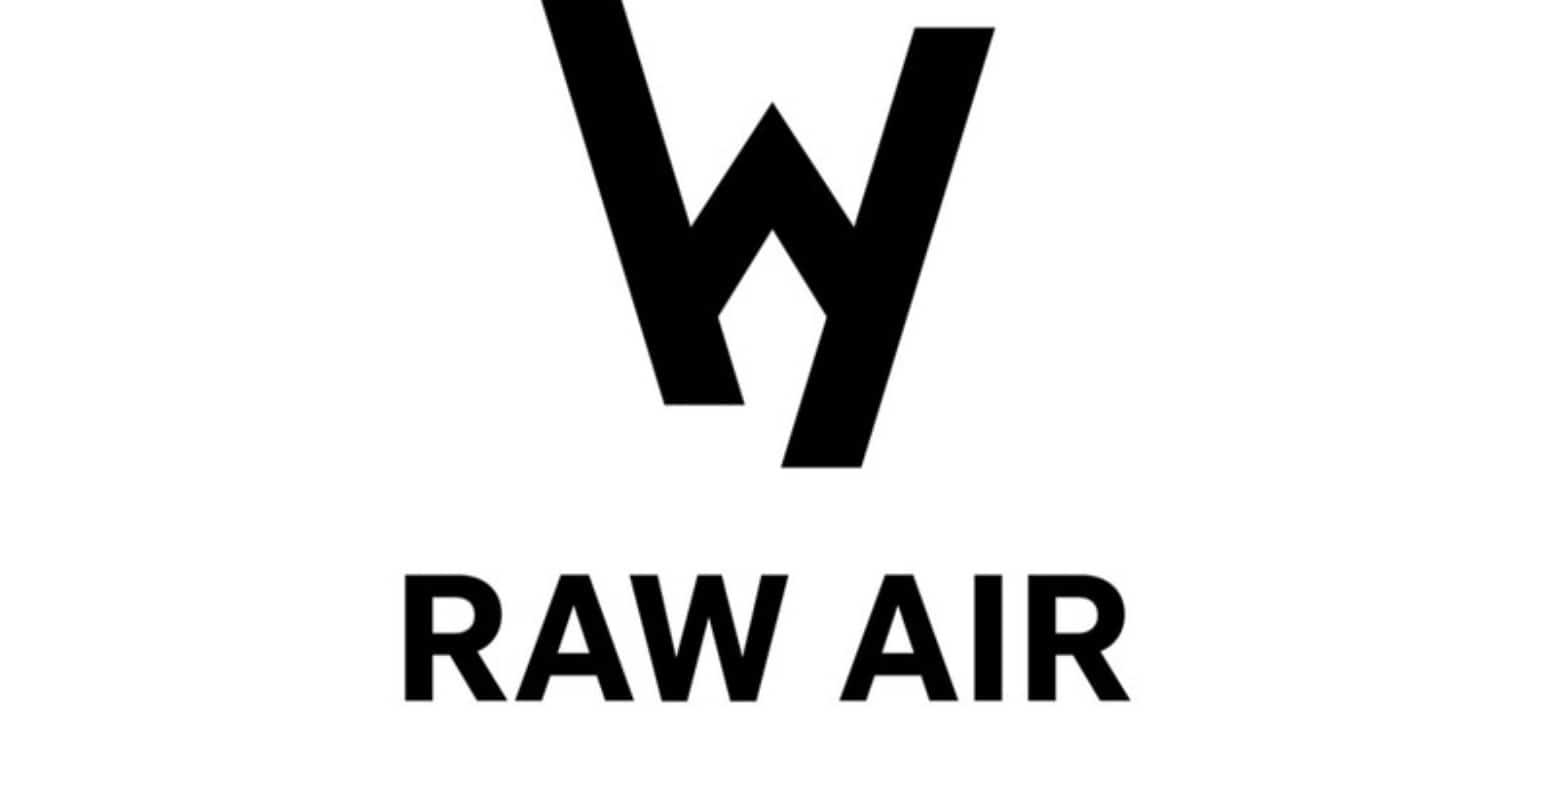 Raw Air 2019. Typy bukmacherskie. Kto wygra?